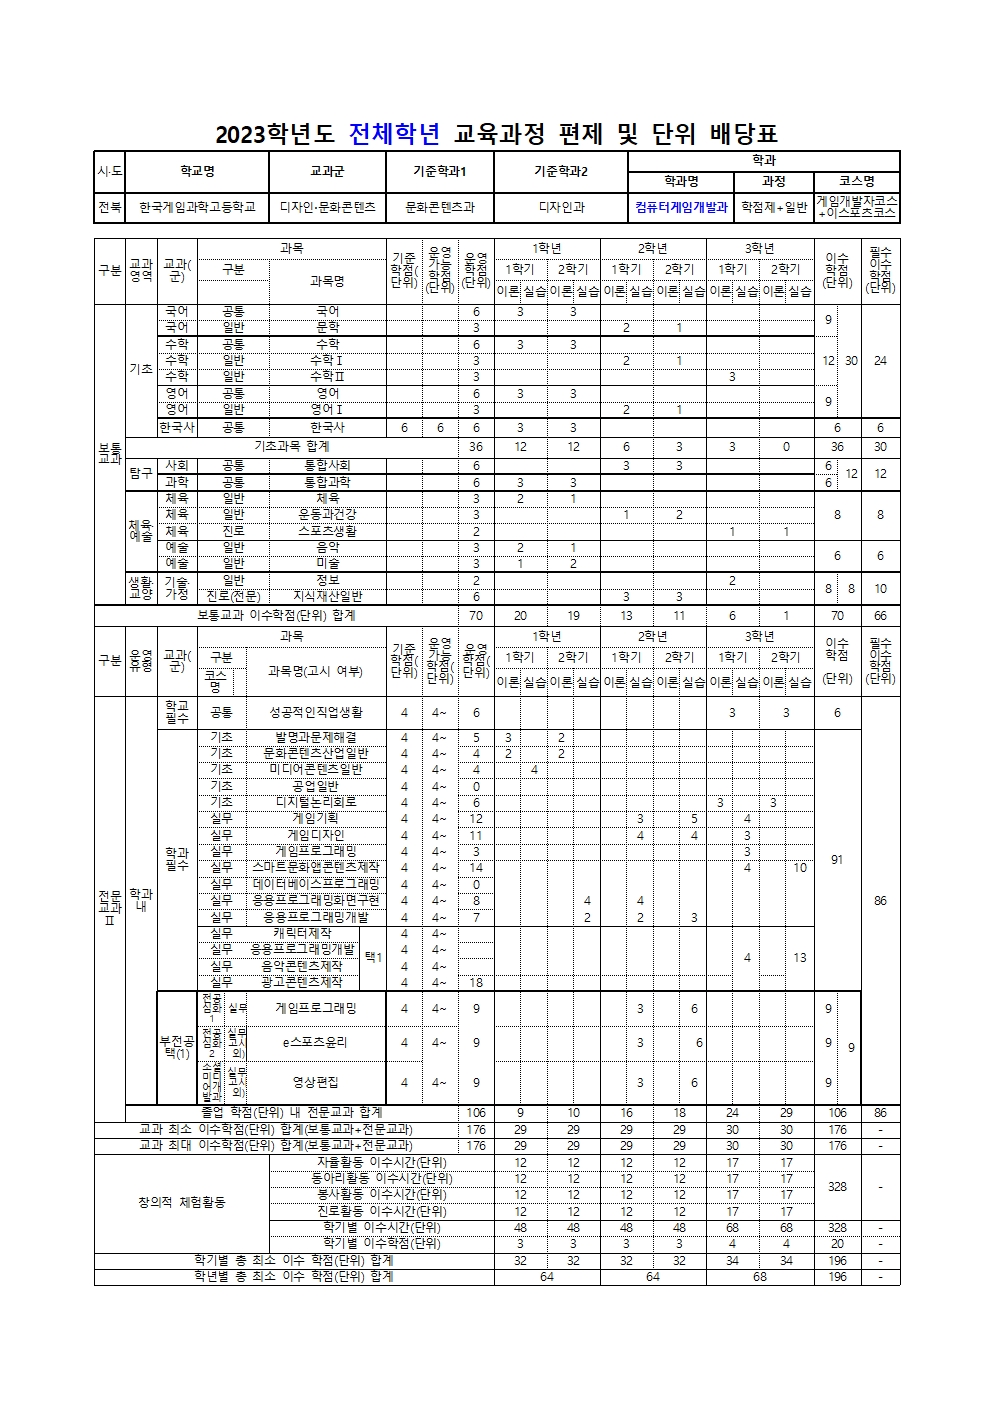 한국게임과학고등학교 2023학년도 교육과정 편성표(컨설팅수정본)007